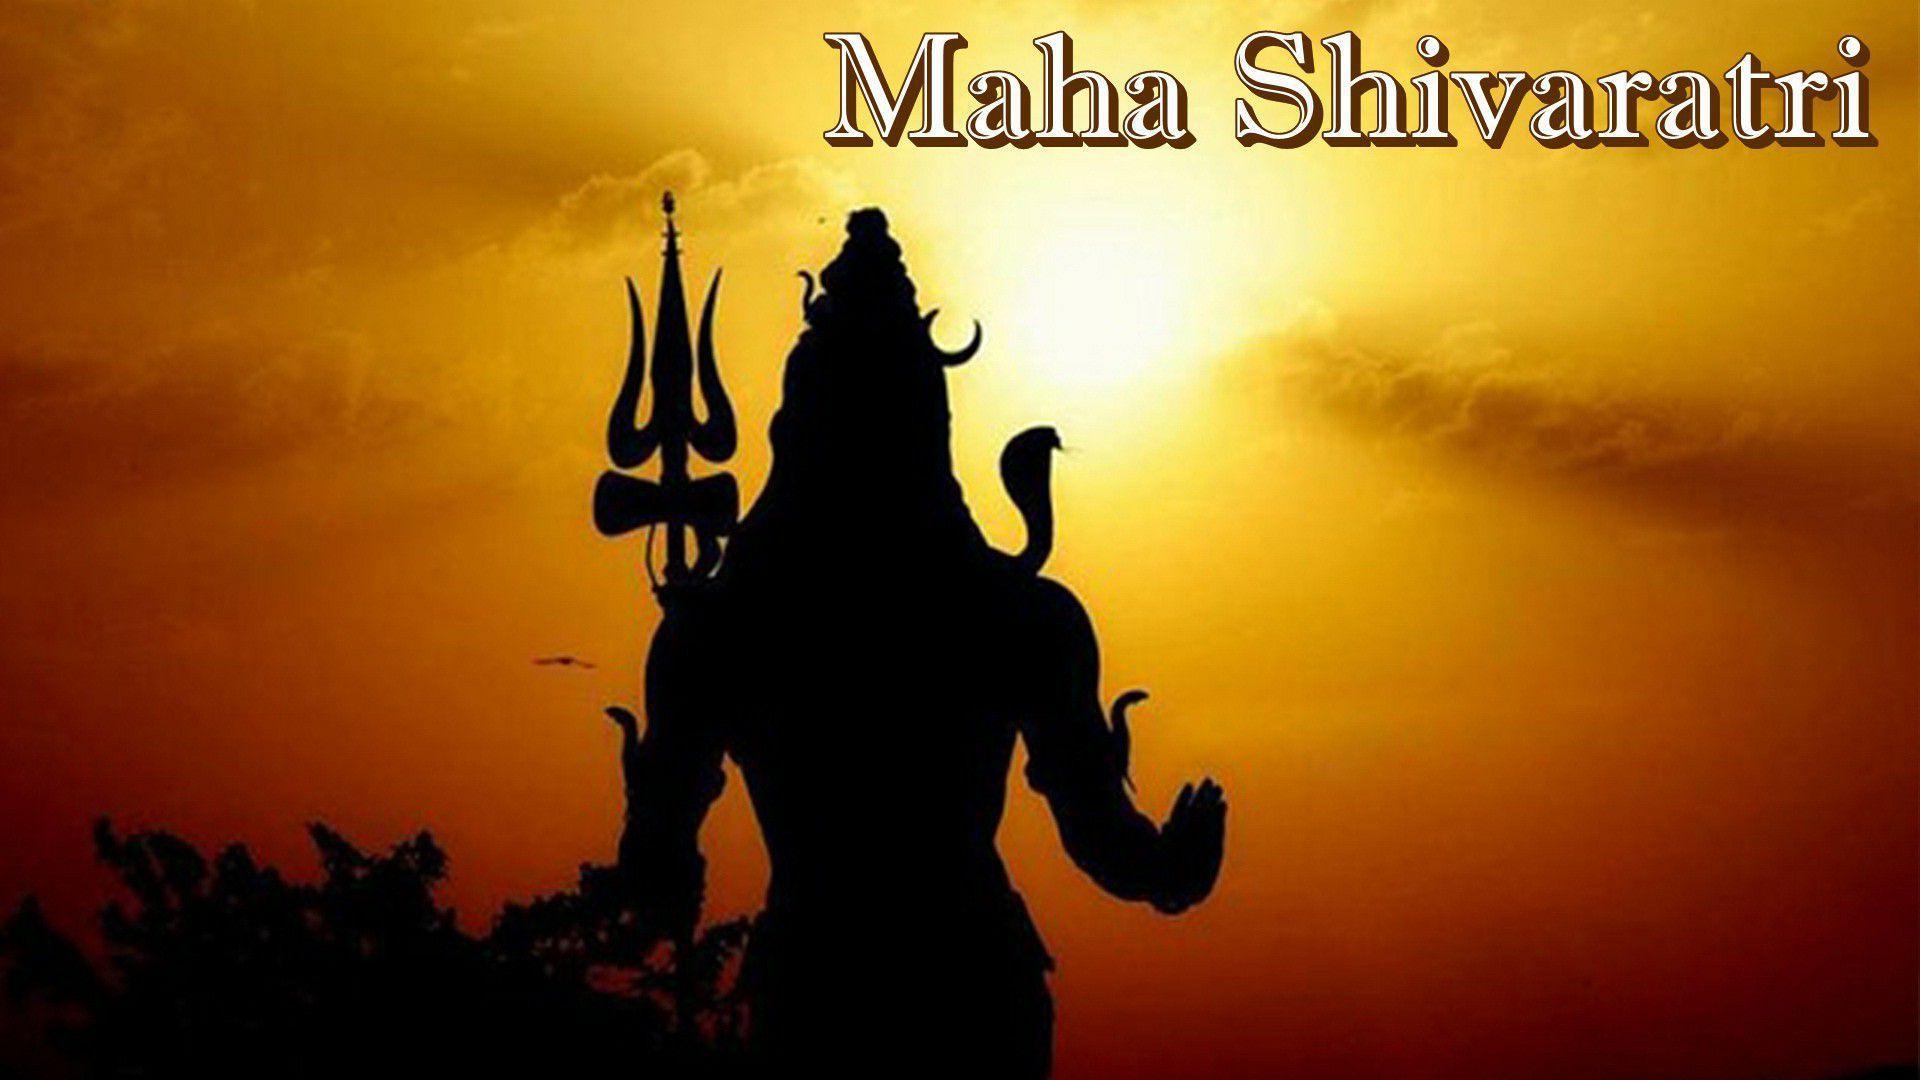 Maha Shivaratri HD Wallpaper, image collections of wallpaper